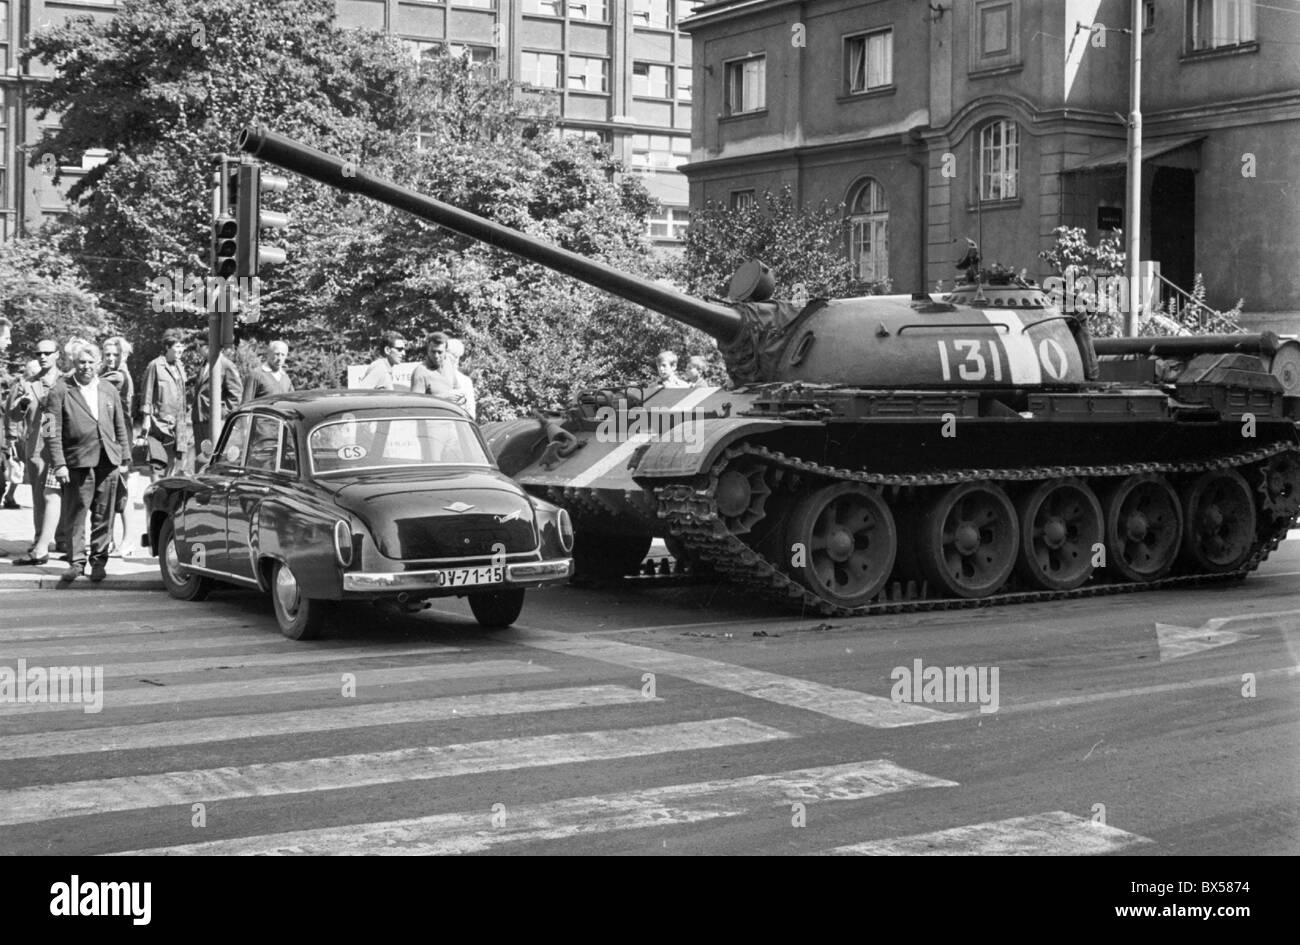 Les troupes de l'Union soviétique et ses alliés du Pacte de Varsovie ont envahi la Tchécoslovaquie le 21 août 1968 pour mettre fin à la libéralisation politique Banque D'Images